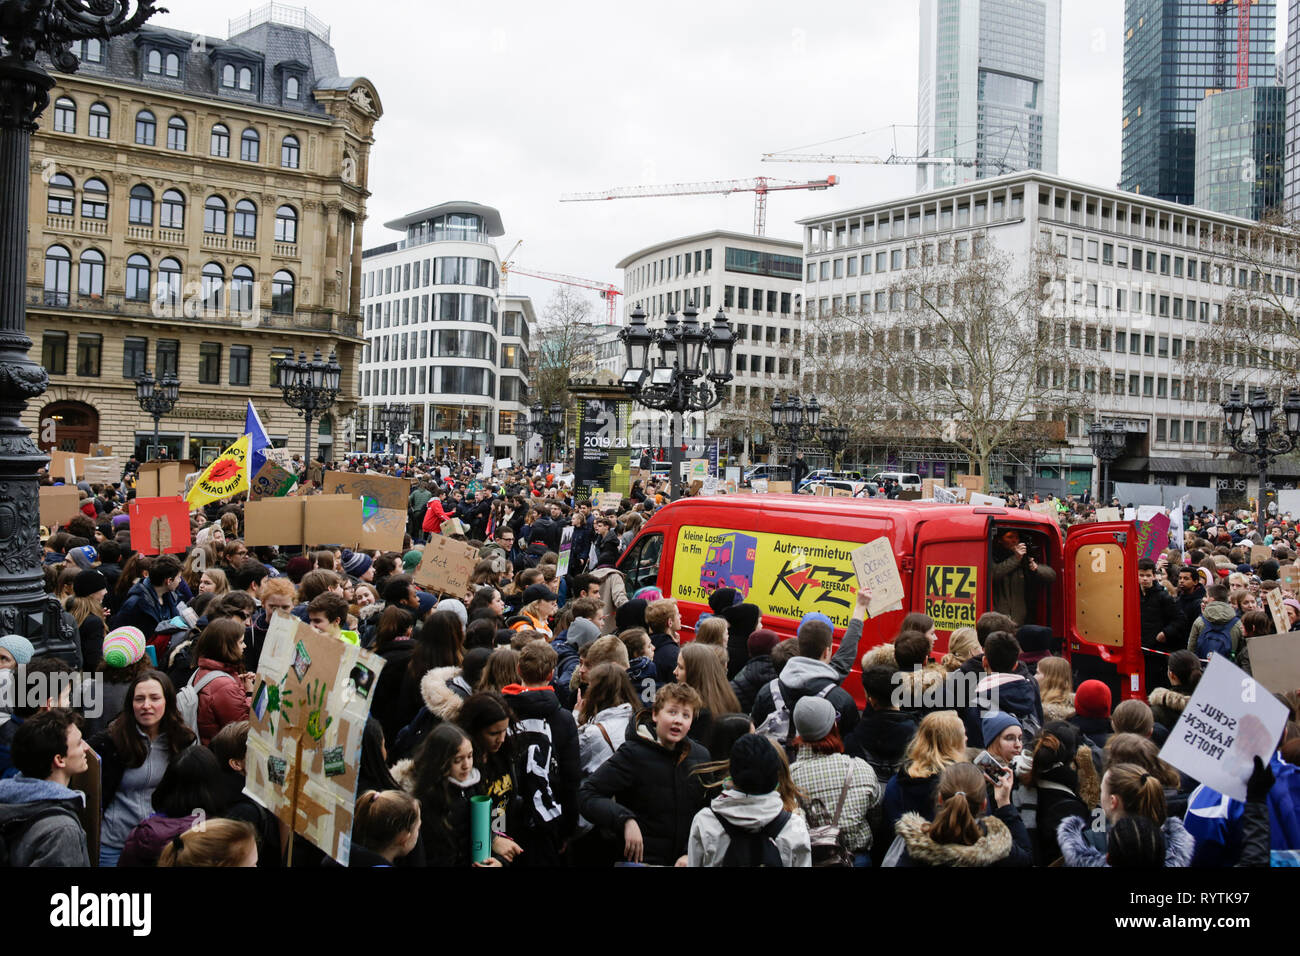 Francoforte, Germania. Il 15 marzo 2019. Il manifestante hanno arrestato per un breve rally al di fuori dell'Alte Oper (antico teatro dell'opera). Oltre 6 mila persone (per la maggior parte degli alunni che hanno saltato la scuola per prendere parte alla protesta) hanno marciato attraverso Francoforte, per protestare contro il cambiamento climatico e per l' introduzione di misure contro di essa. La protesta è stata parte del clima in tutto il mondo il giorno di sciopero dal movimento FridaysForFuture, iniziato da Greta Thunberg in Svezia. Credito: Michael Debets/Alamy Live News Foto Stock